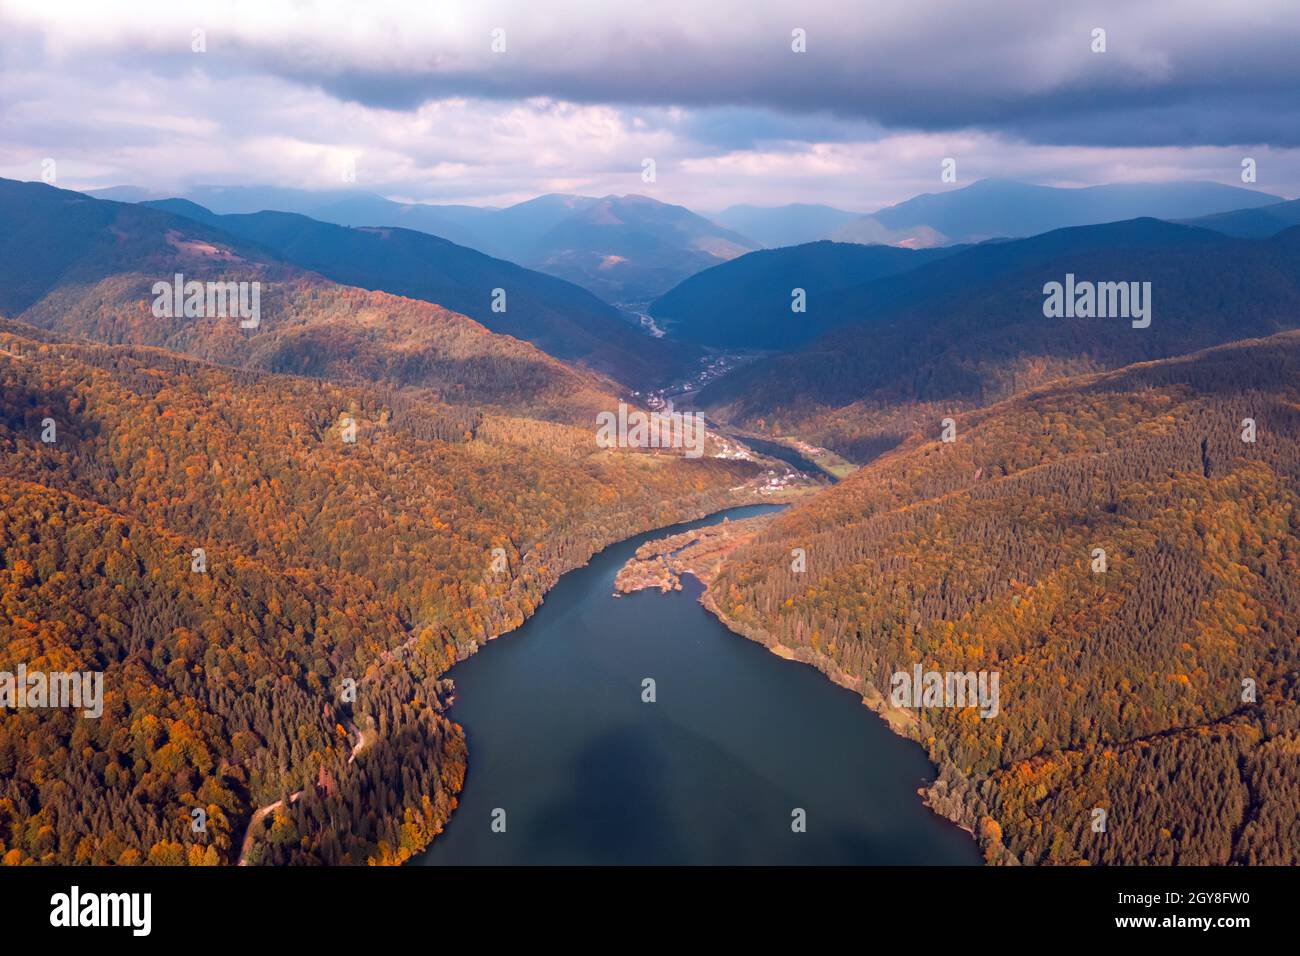 Luftaufnahme auf See mit türkisfarbenem Wasser in den Karpaten. Herbstwald mit Orangenbäumen an der Küste. Terebland-Ritske Stausee (Vilshanske) am Terebland-Fluss, Transkarpatien, Ukraine Stockfoto